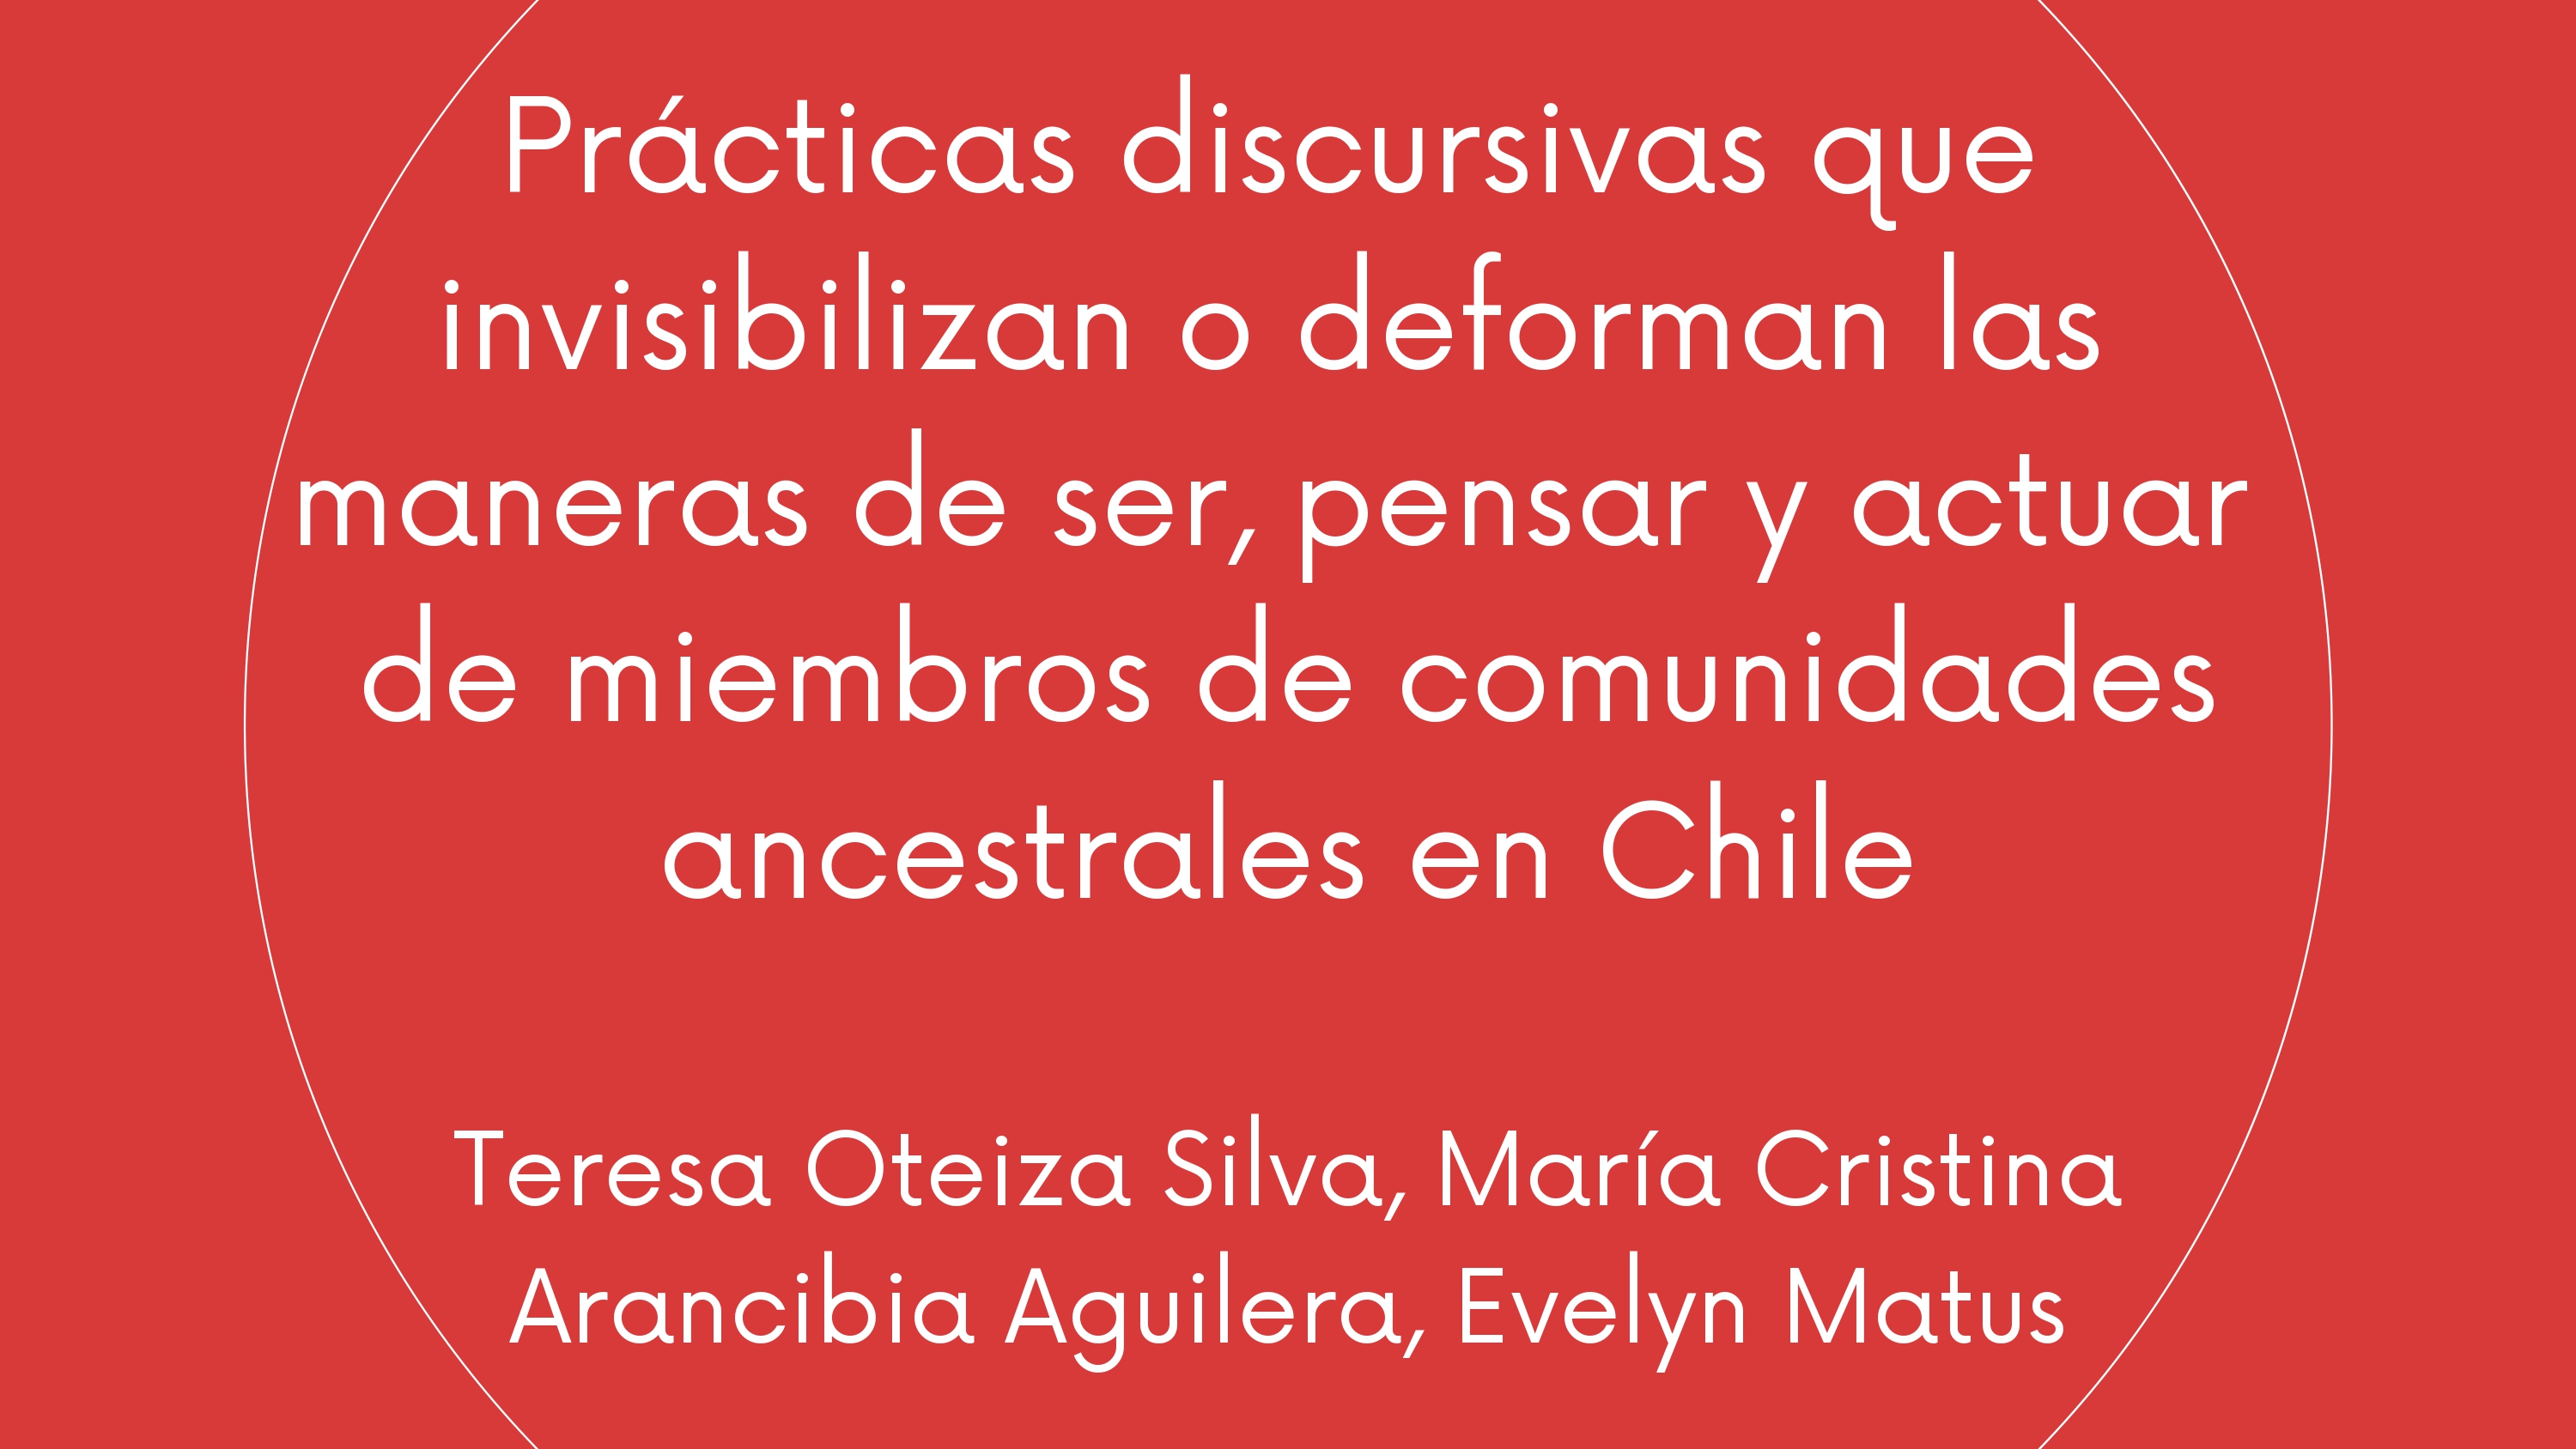 Prácticas discursivas que invisibilizan o deforman las maneras de ser, pensar y actuar de miembros de comunidades ancestrales en Chile